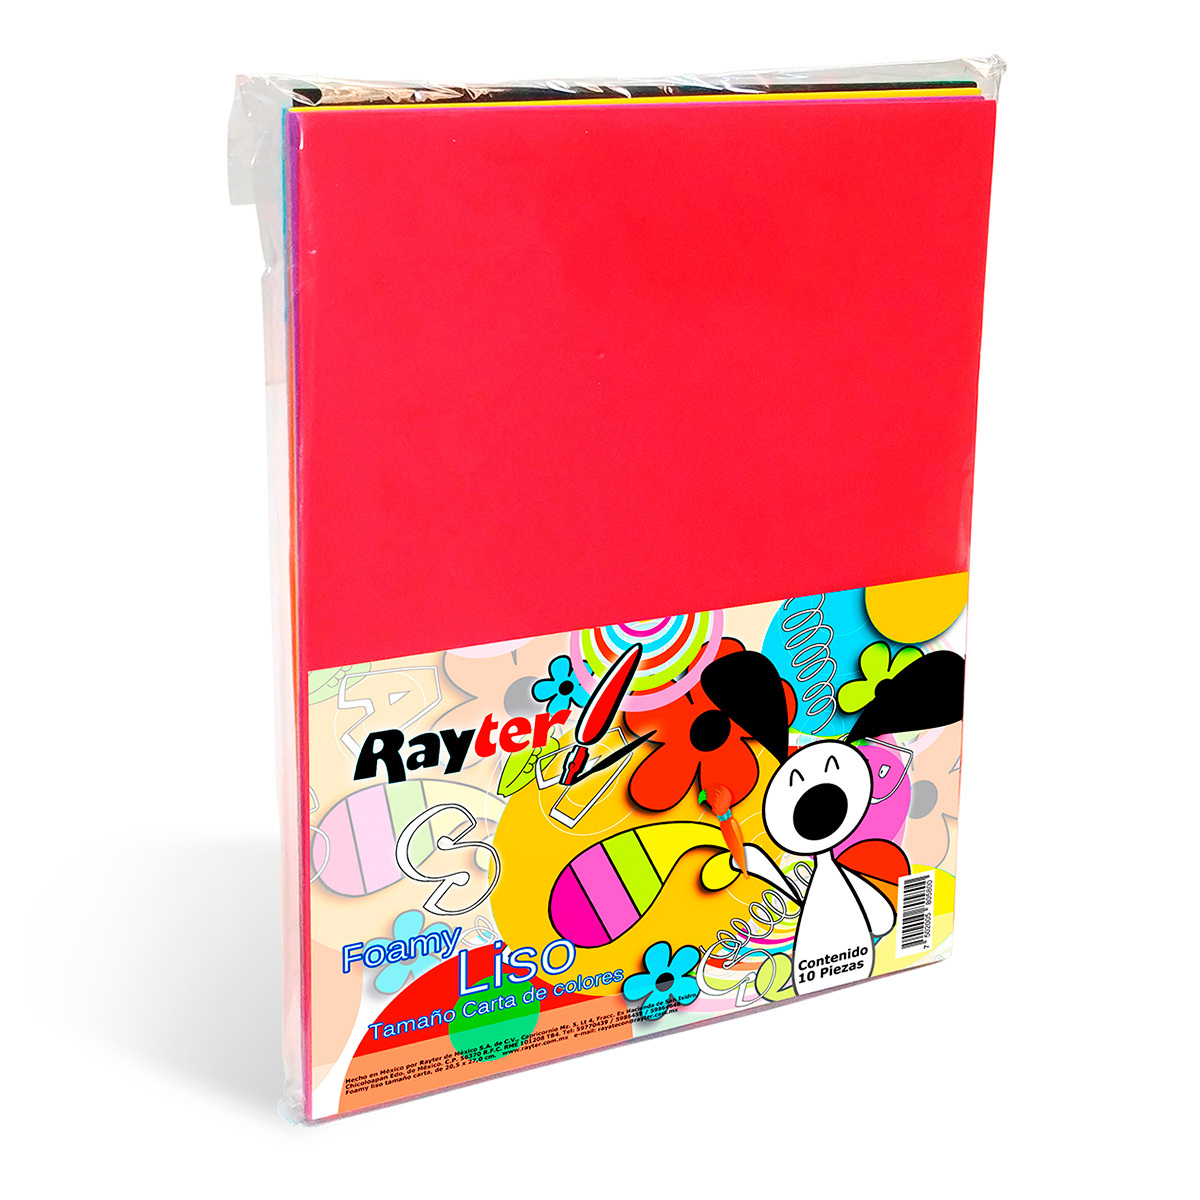 Foamy Carta Rayter / Colores surtidos / 10 piezas